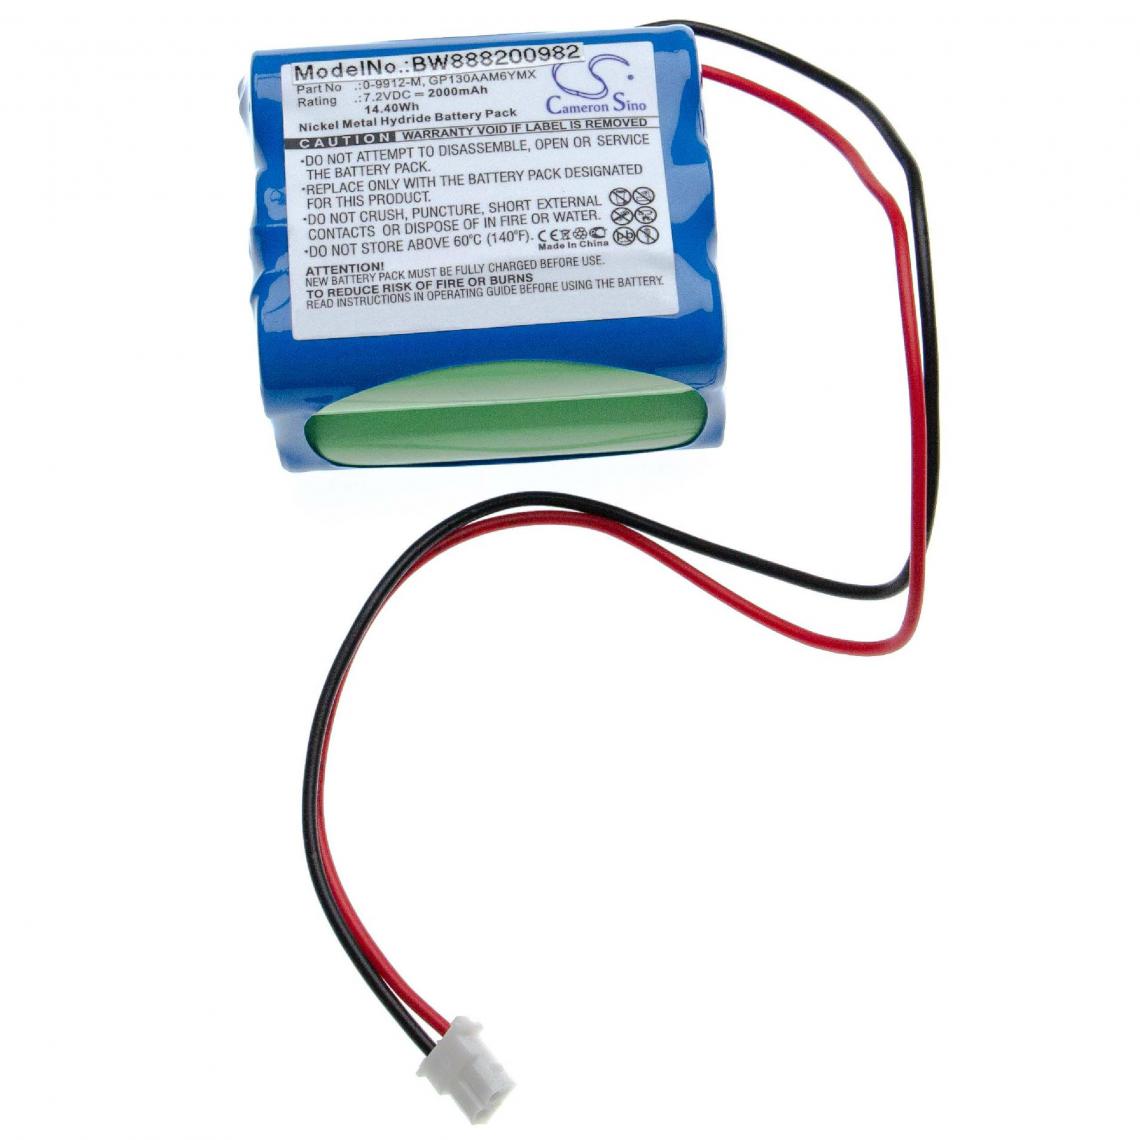 Vhbw - vhbw batterie compatible avec Visonic 0-9912-H, 0-9912-W, Powermax Plus, Powermax+ alarme maison/contrôle home security (2000mAh, 7.2V, NiMH) - Autre appareil de mesure